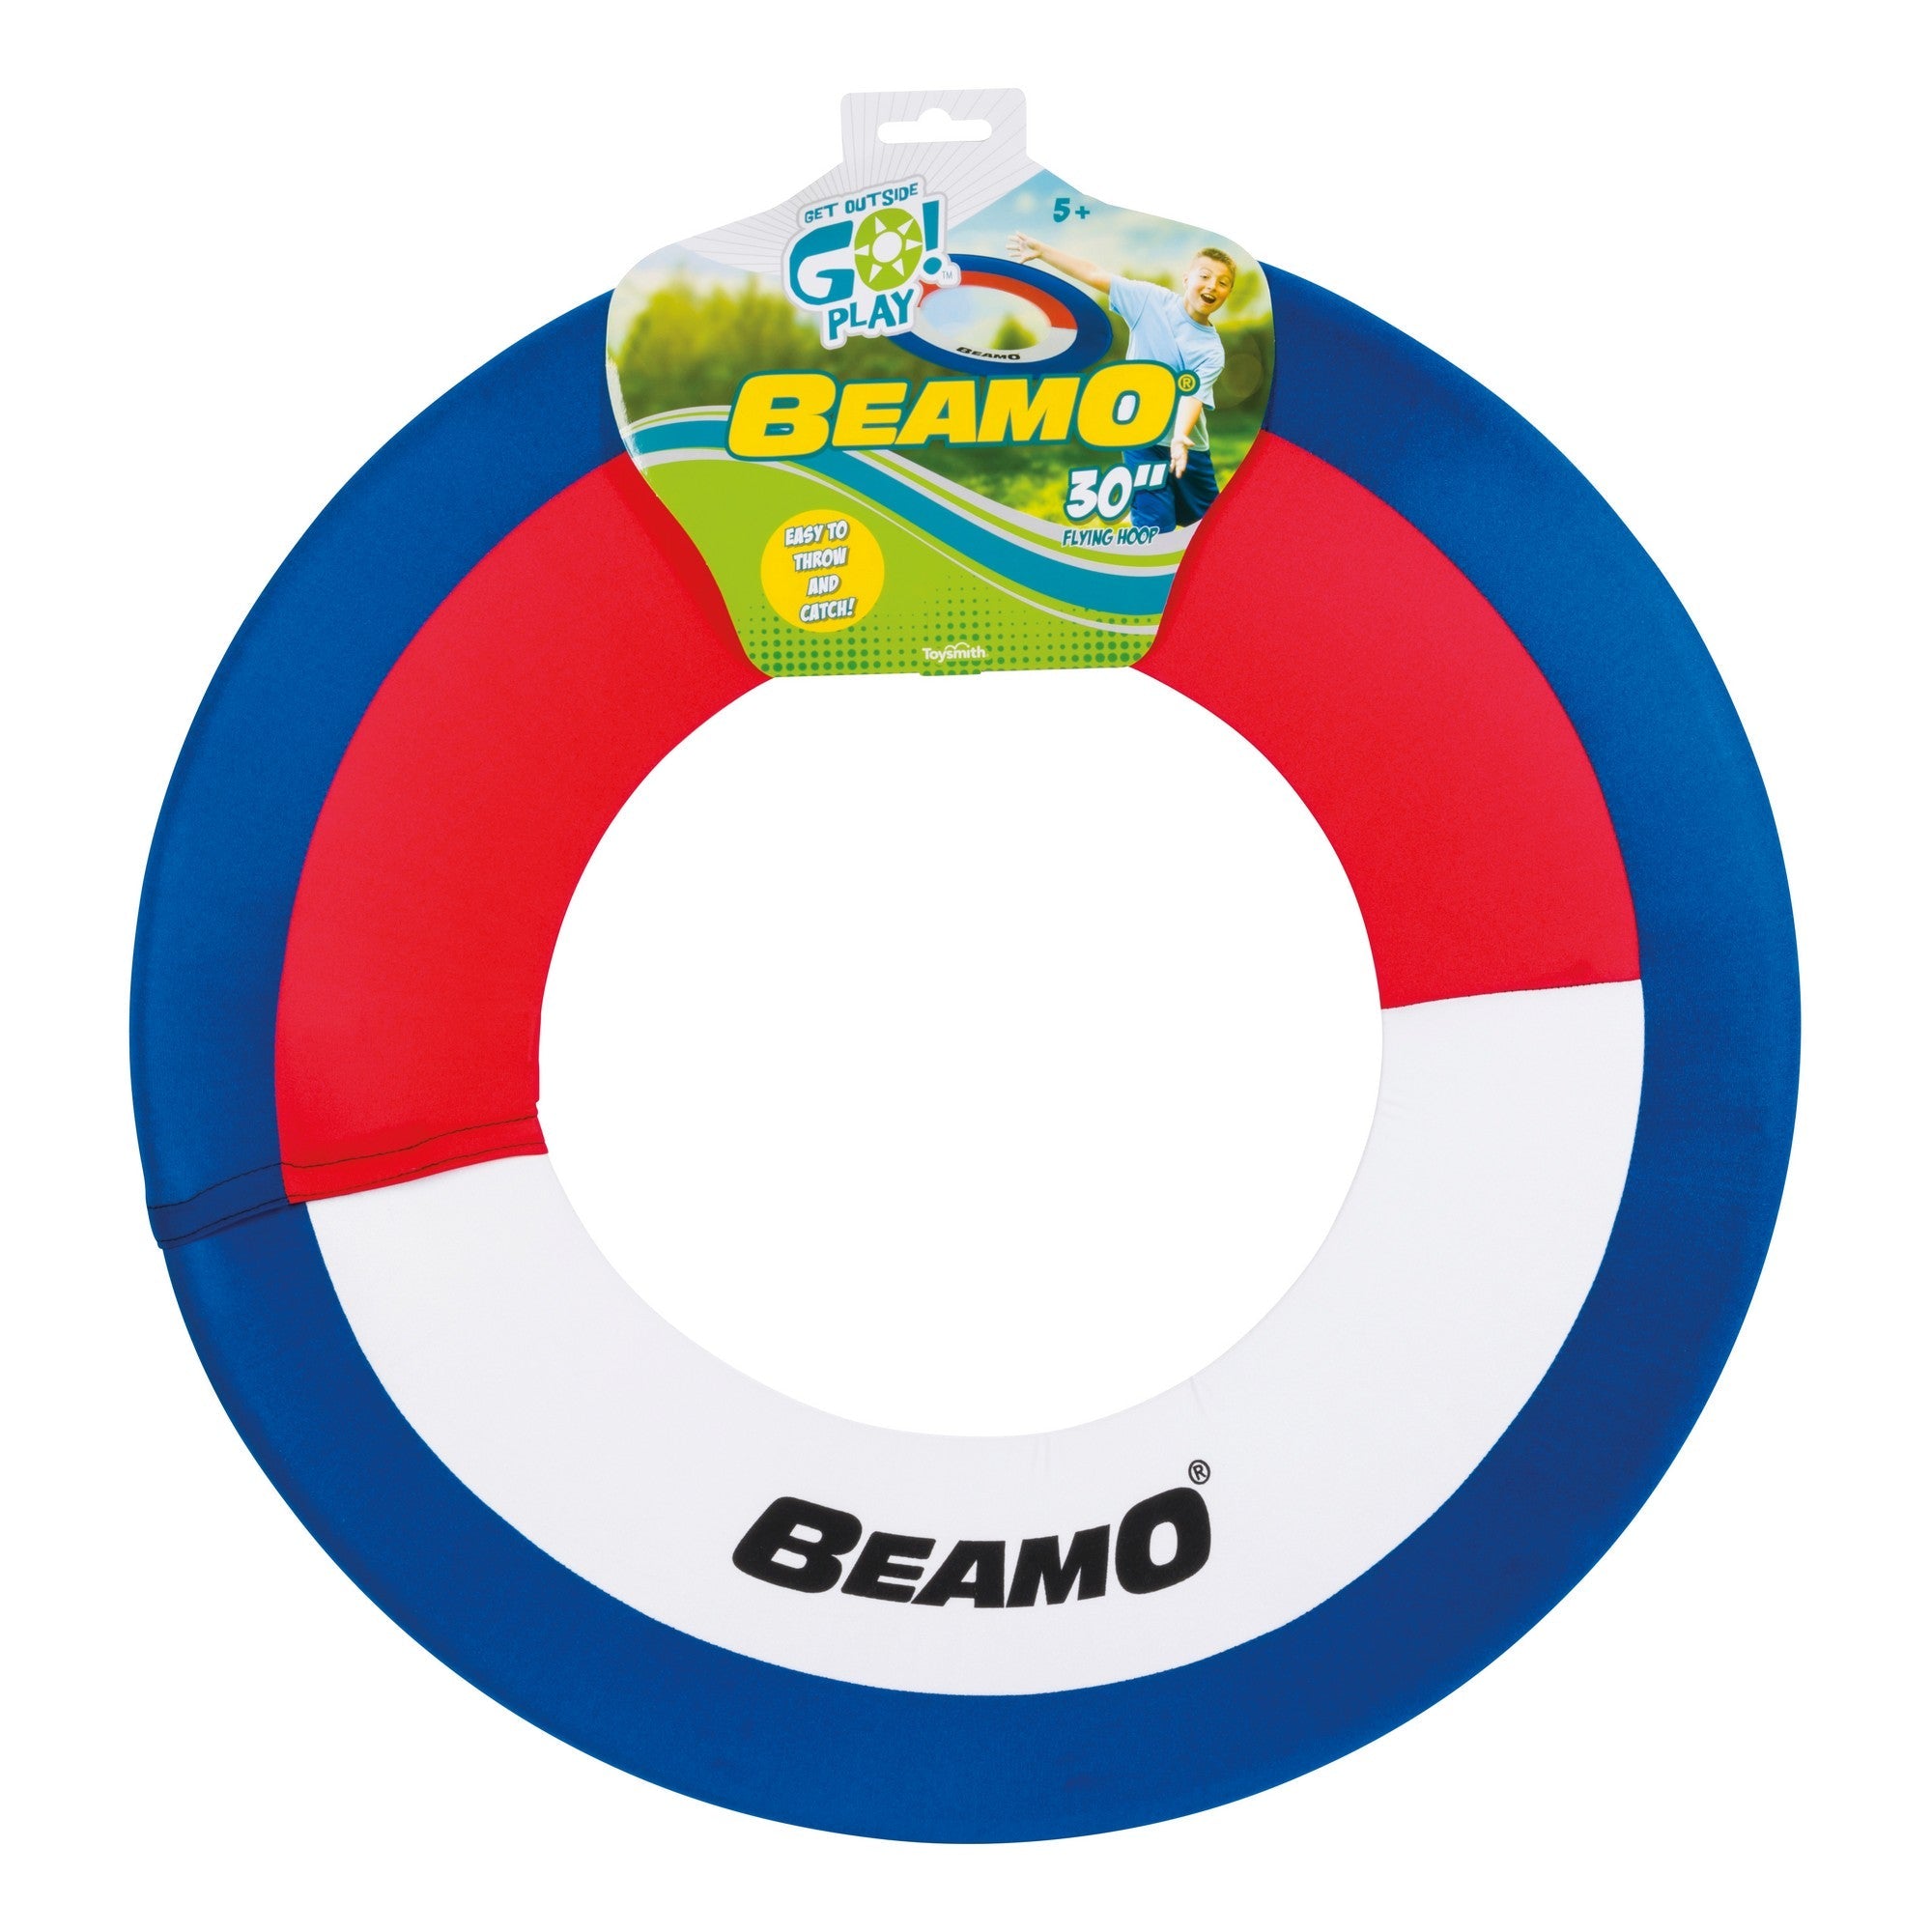 Beamo - 30” Giant